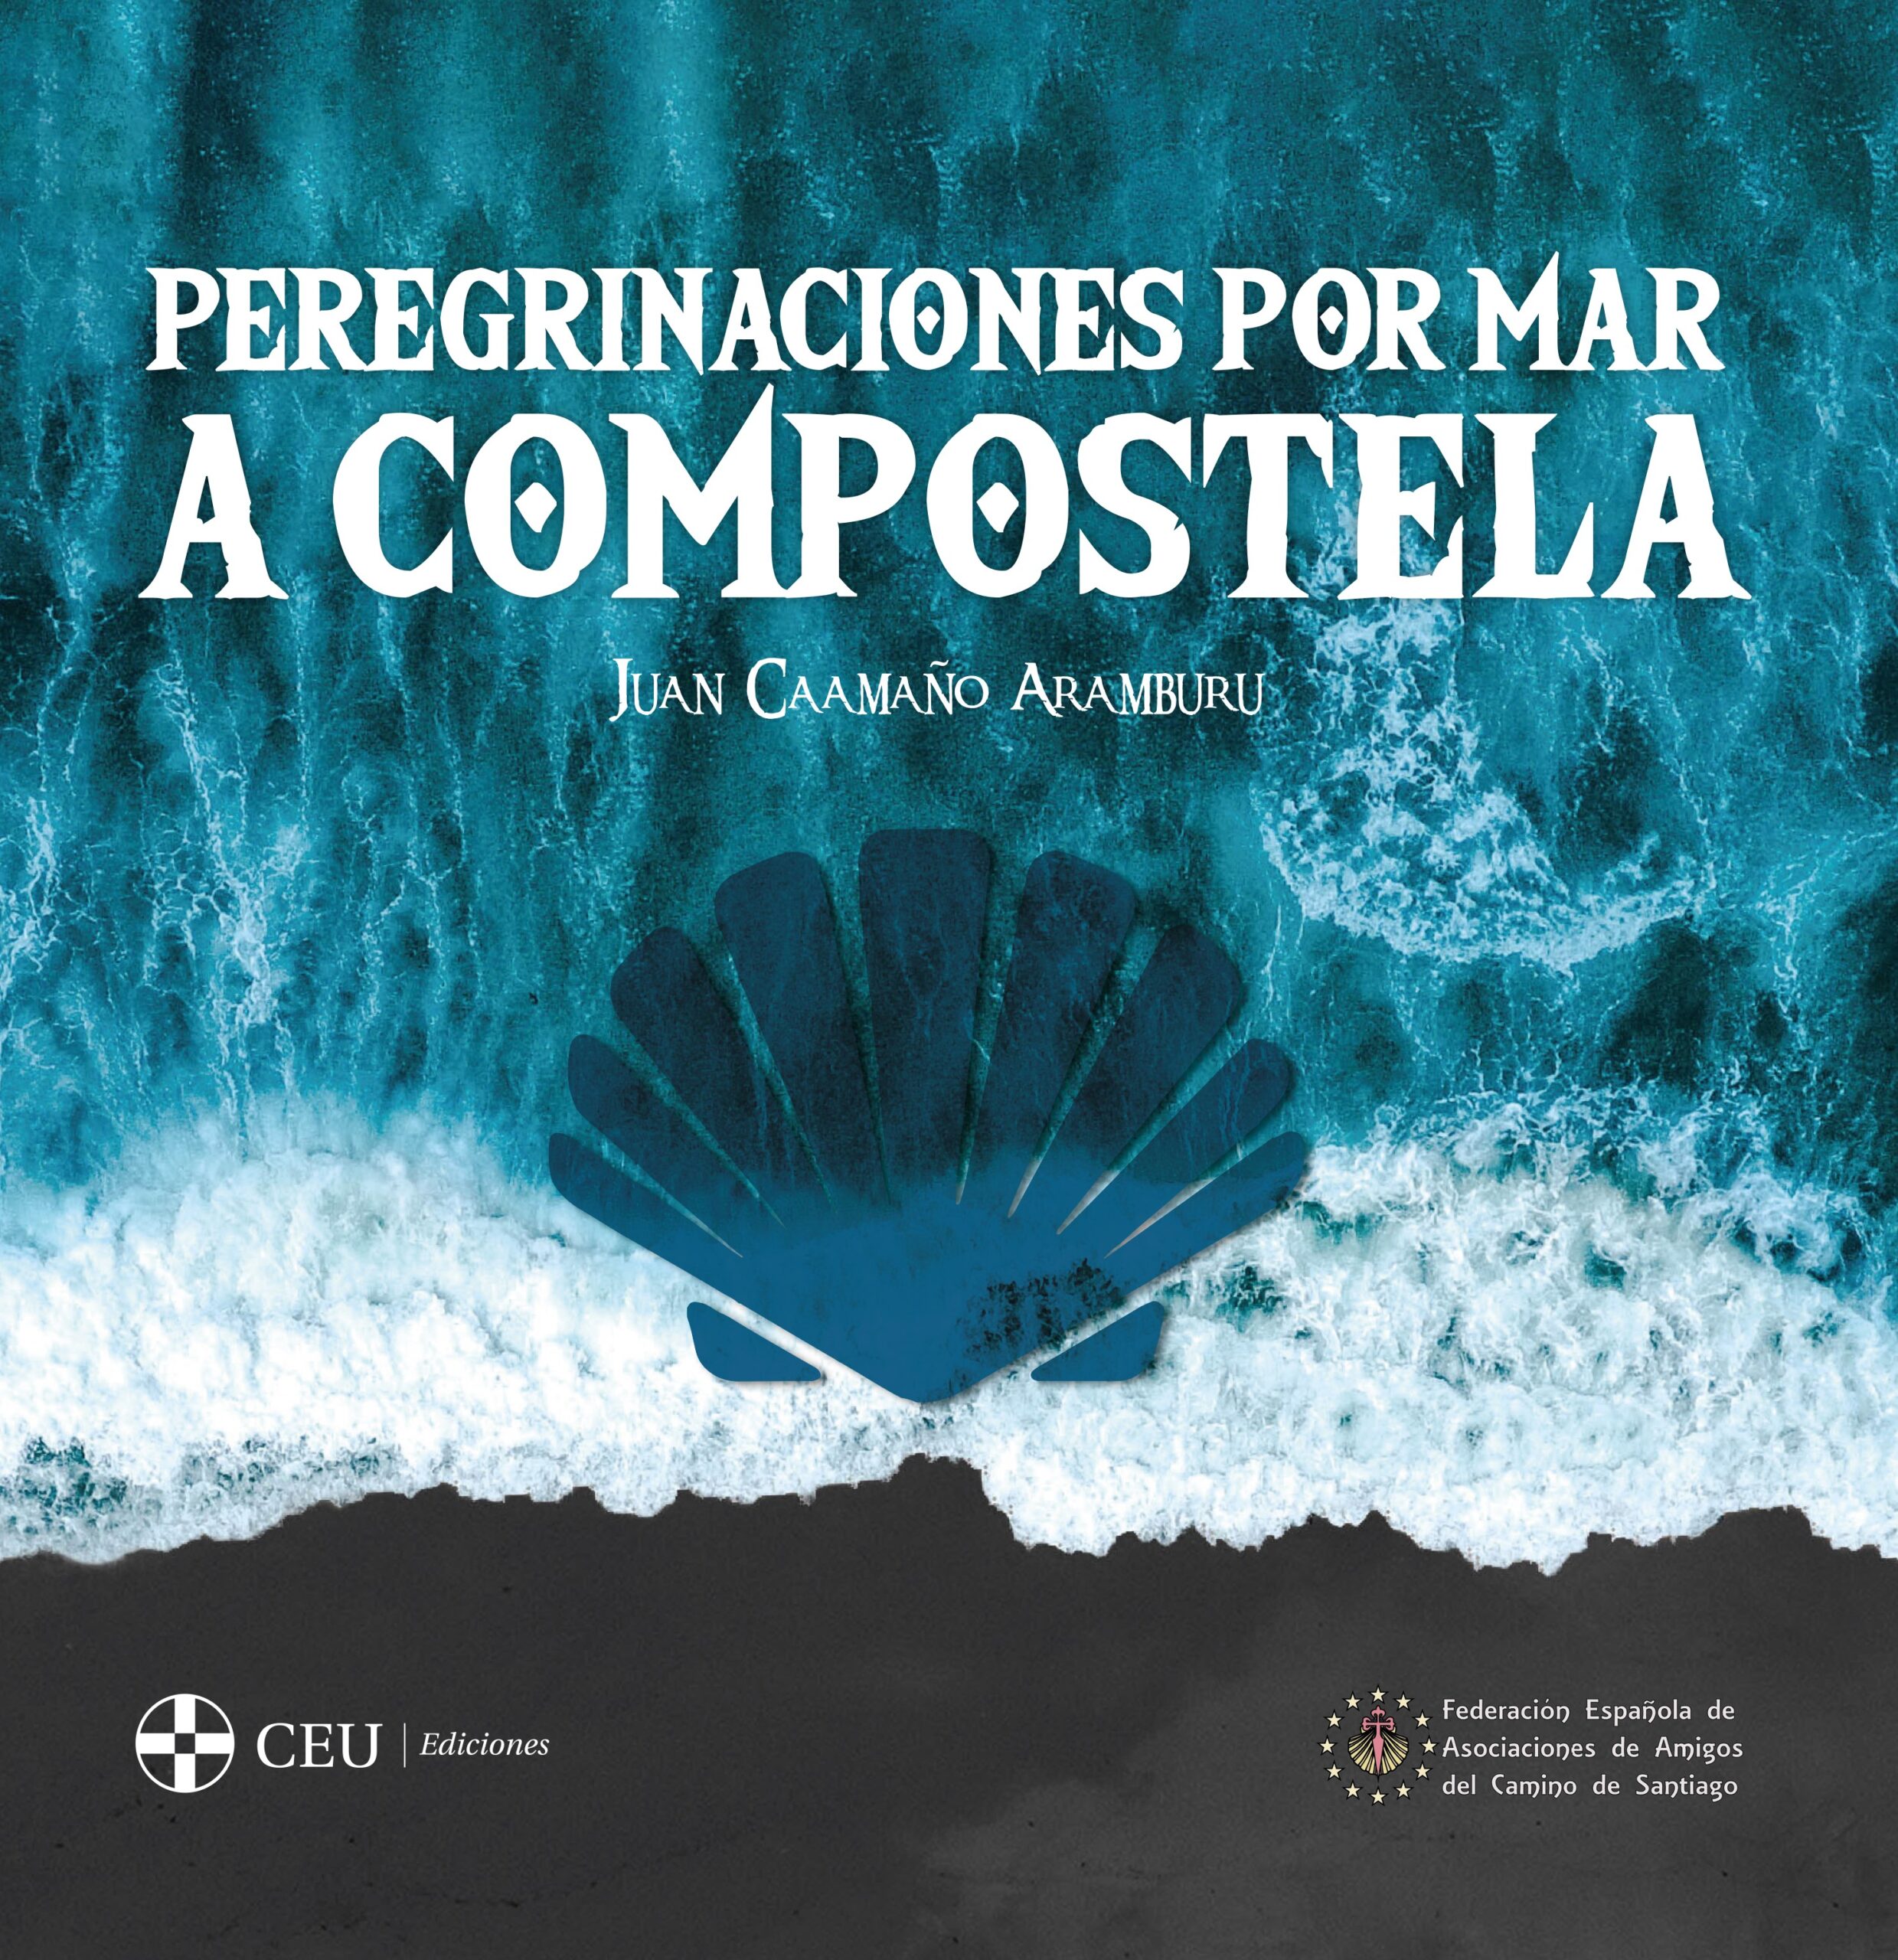 Imagen de portada del libro Peregrinaciones por mar a Compostela